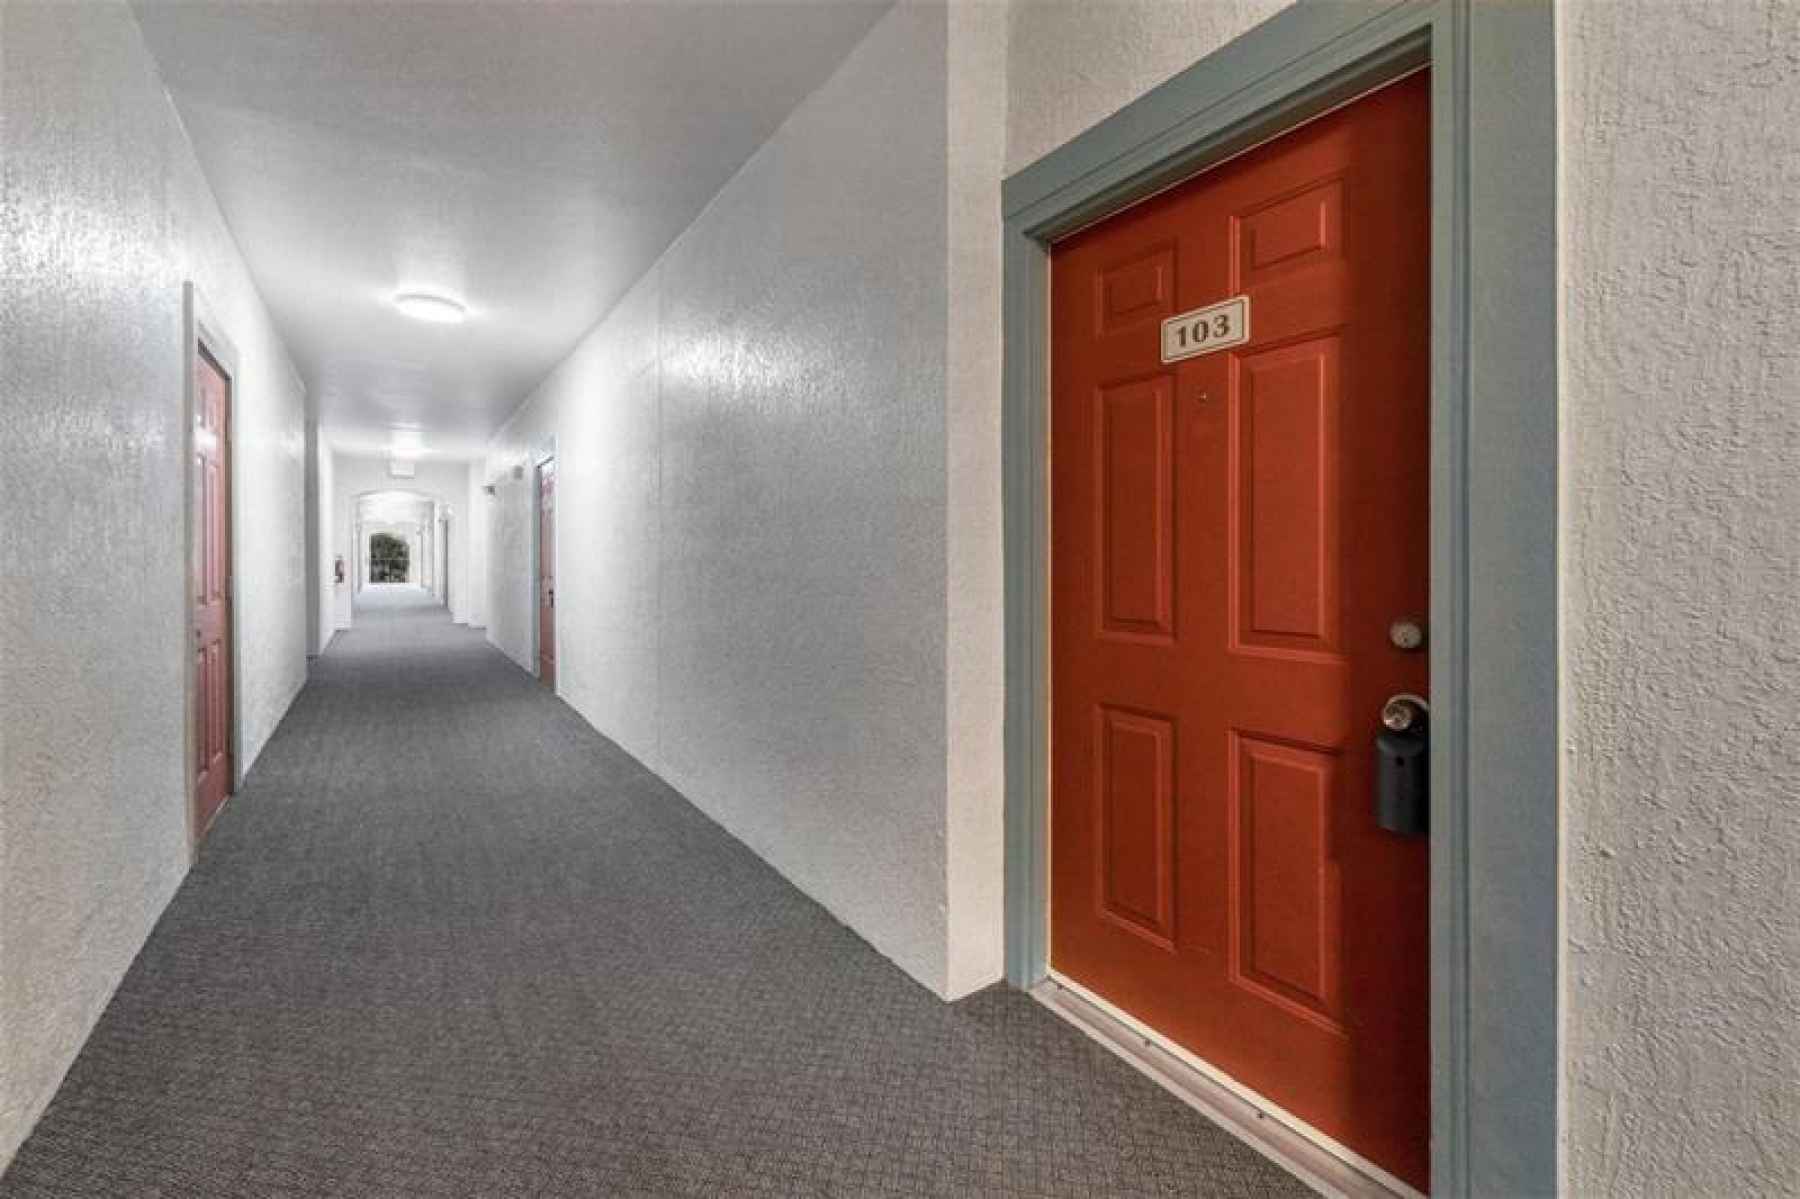 Hallway/Exterior Front door